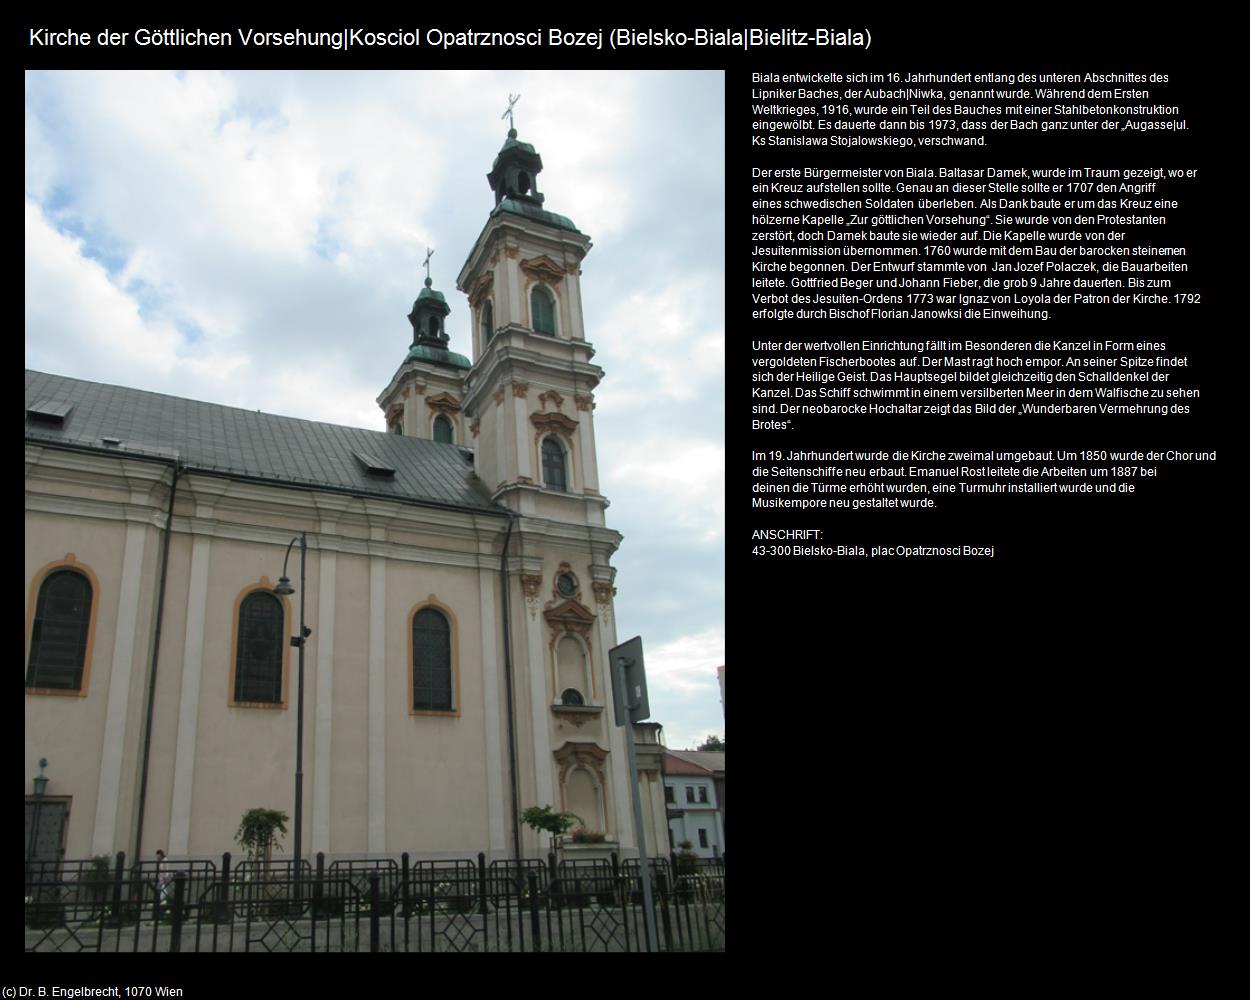 Kirche der Göttlichen Vorsehung (Bielsko-Biala|Bielitz-Biala) in POLEN-Schlesien